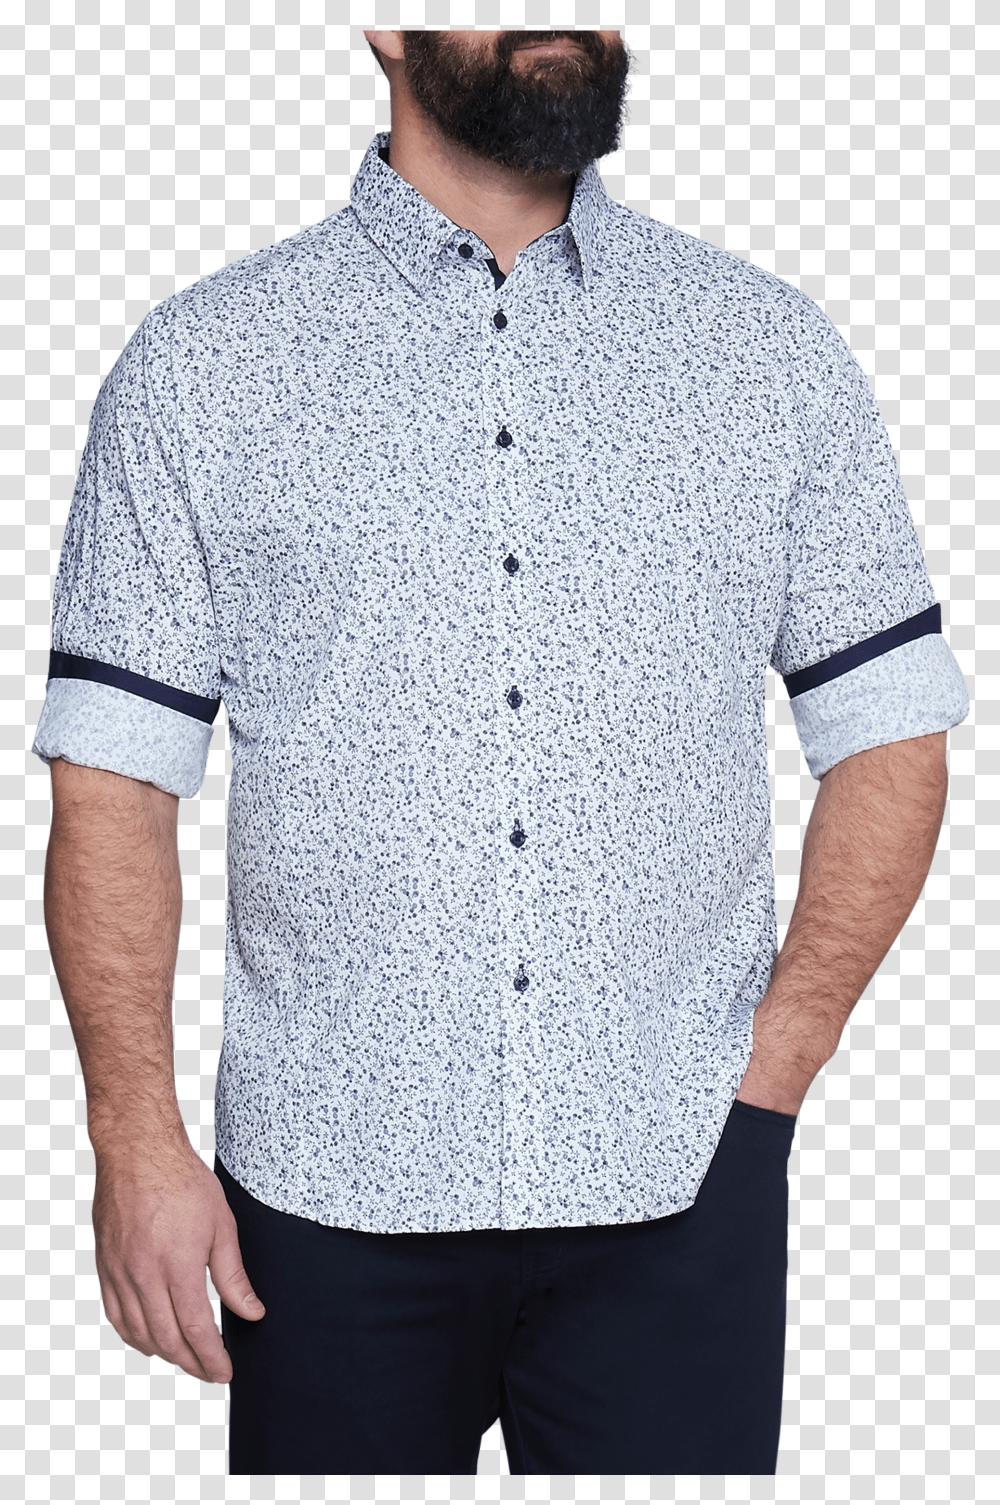 Navy Stirling Floral Print Shirt Pocket Transparent Png